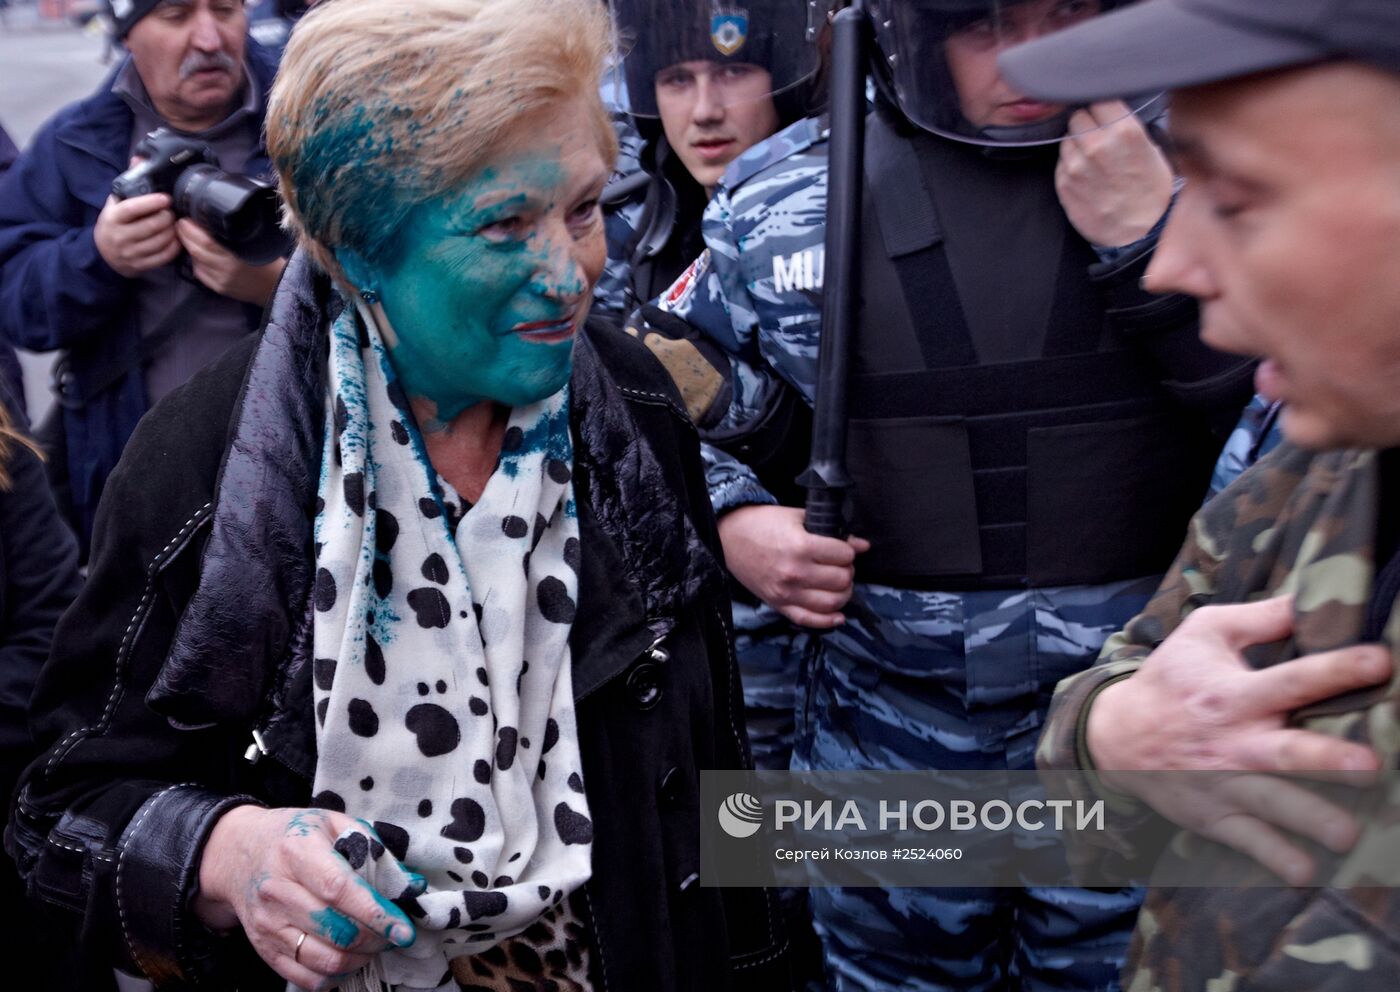 Столкновение радикалов "Правого сектора" и сторонников Компартии Украины в Харькове